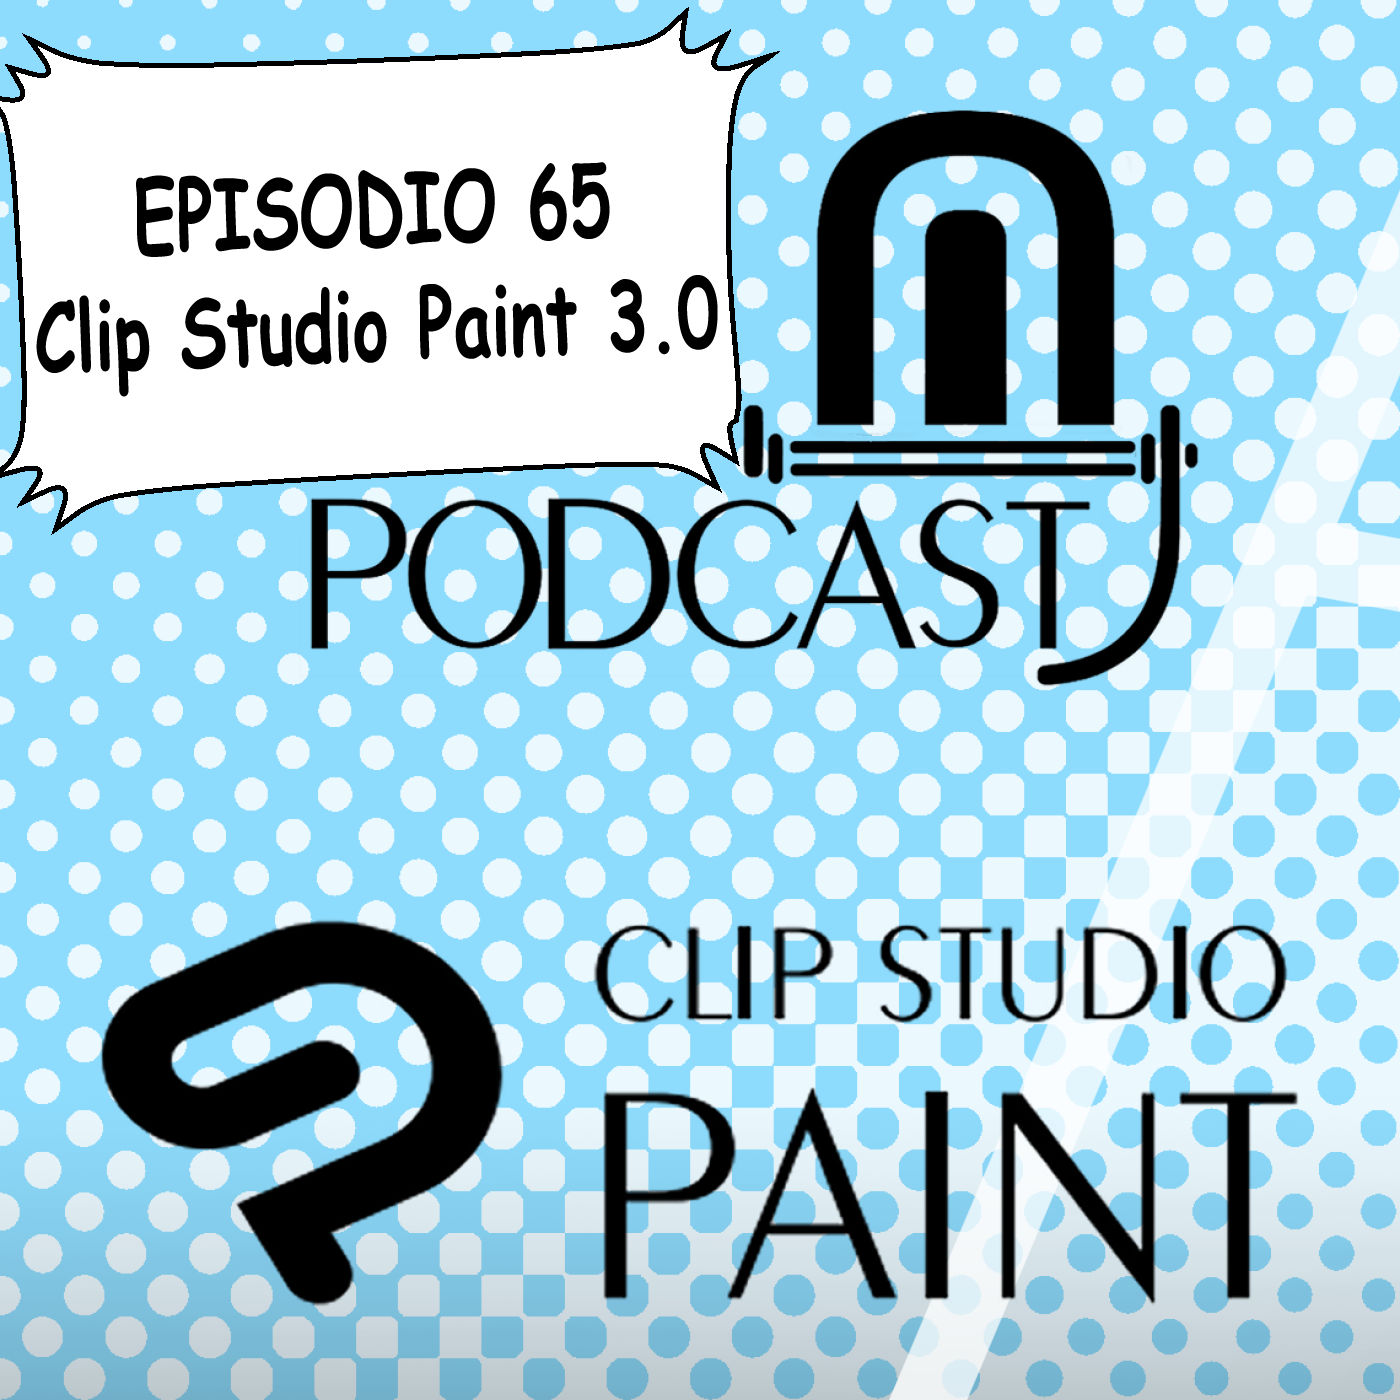 CSP episodio 65. Clip Studio Paint 3.0, lanzamiento , precios, promociones y cómo adquirir esta nueva versión